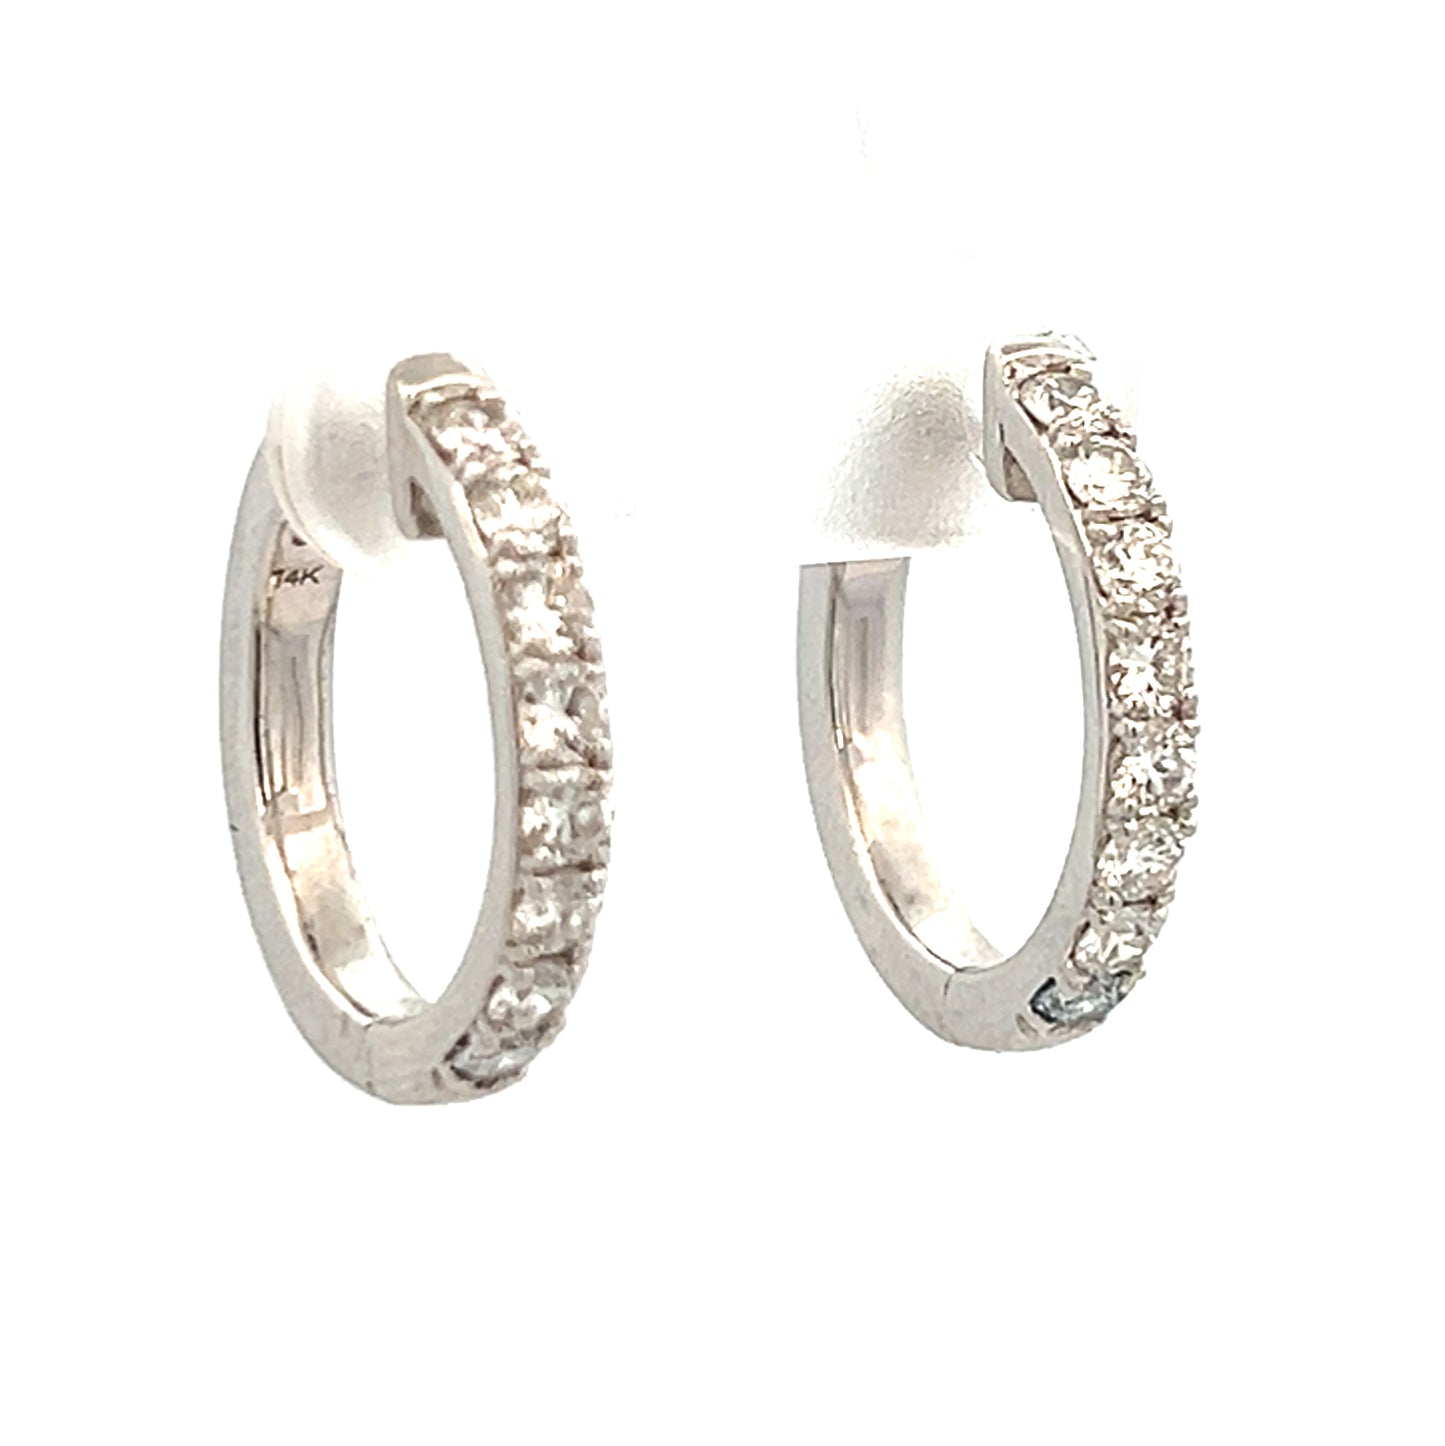 0.75cttw Gold Diamond Hoop Earrings | Small Hoop Earrings With Diamonds | 20mm Gold Hoop Earrings | Gold Hoop Earrings With Diamonds | Diamond Earrings Houston